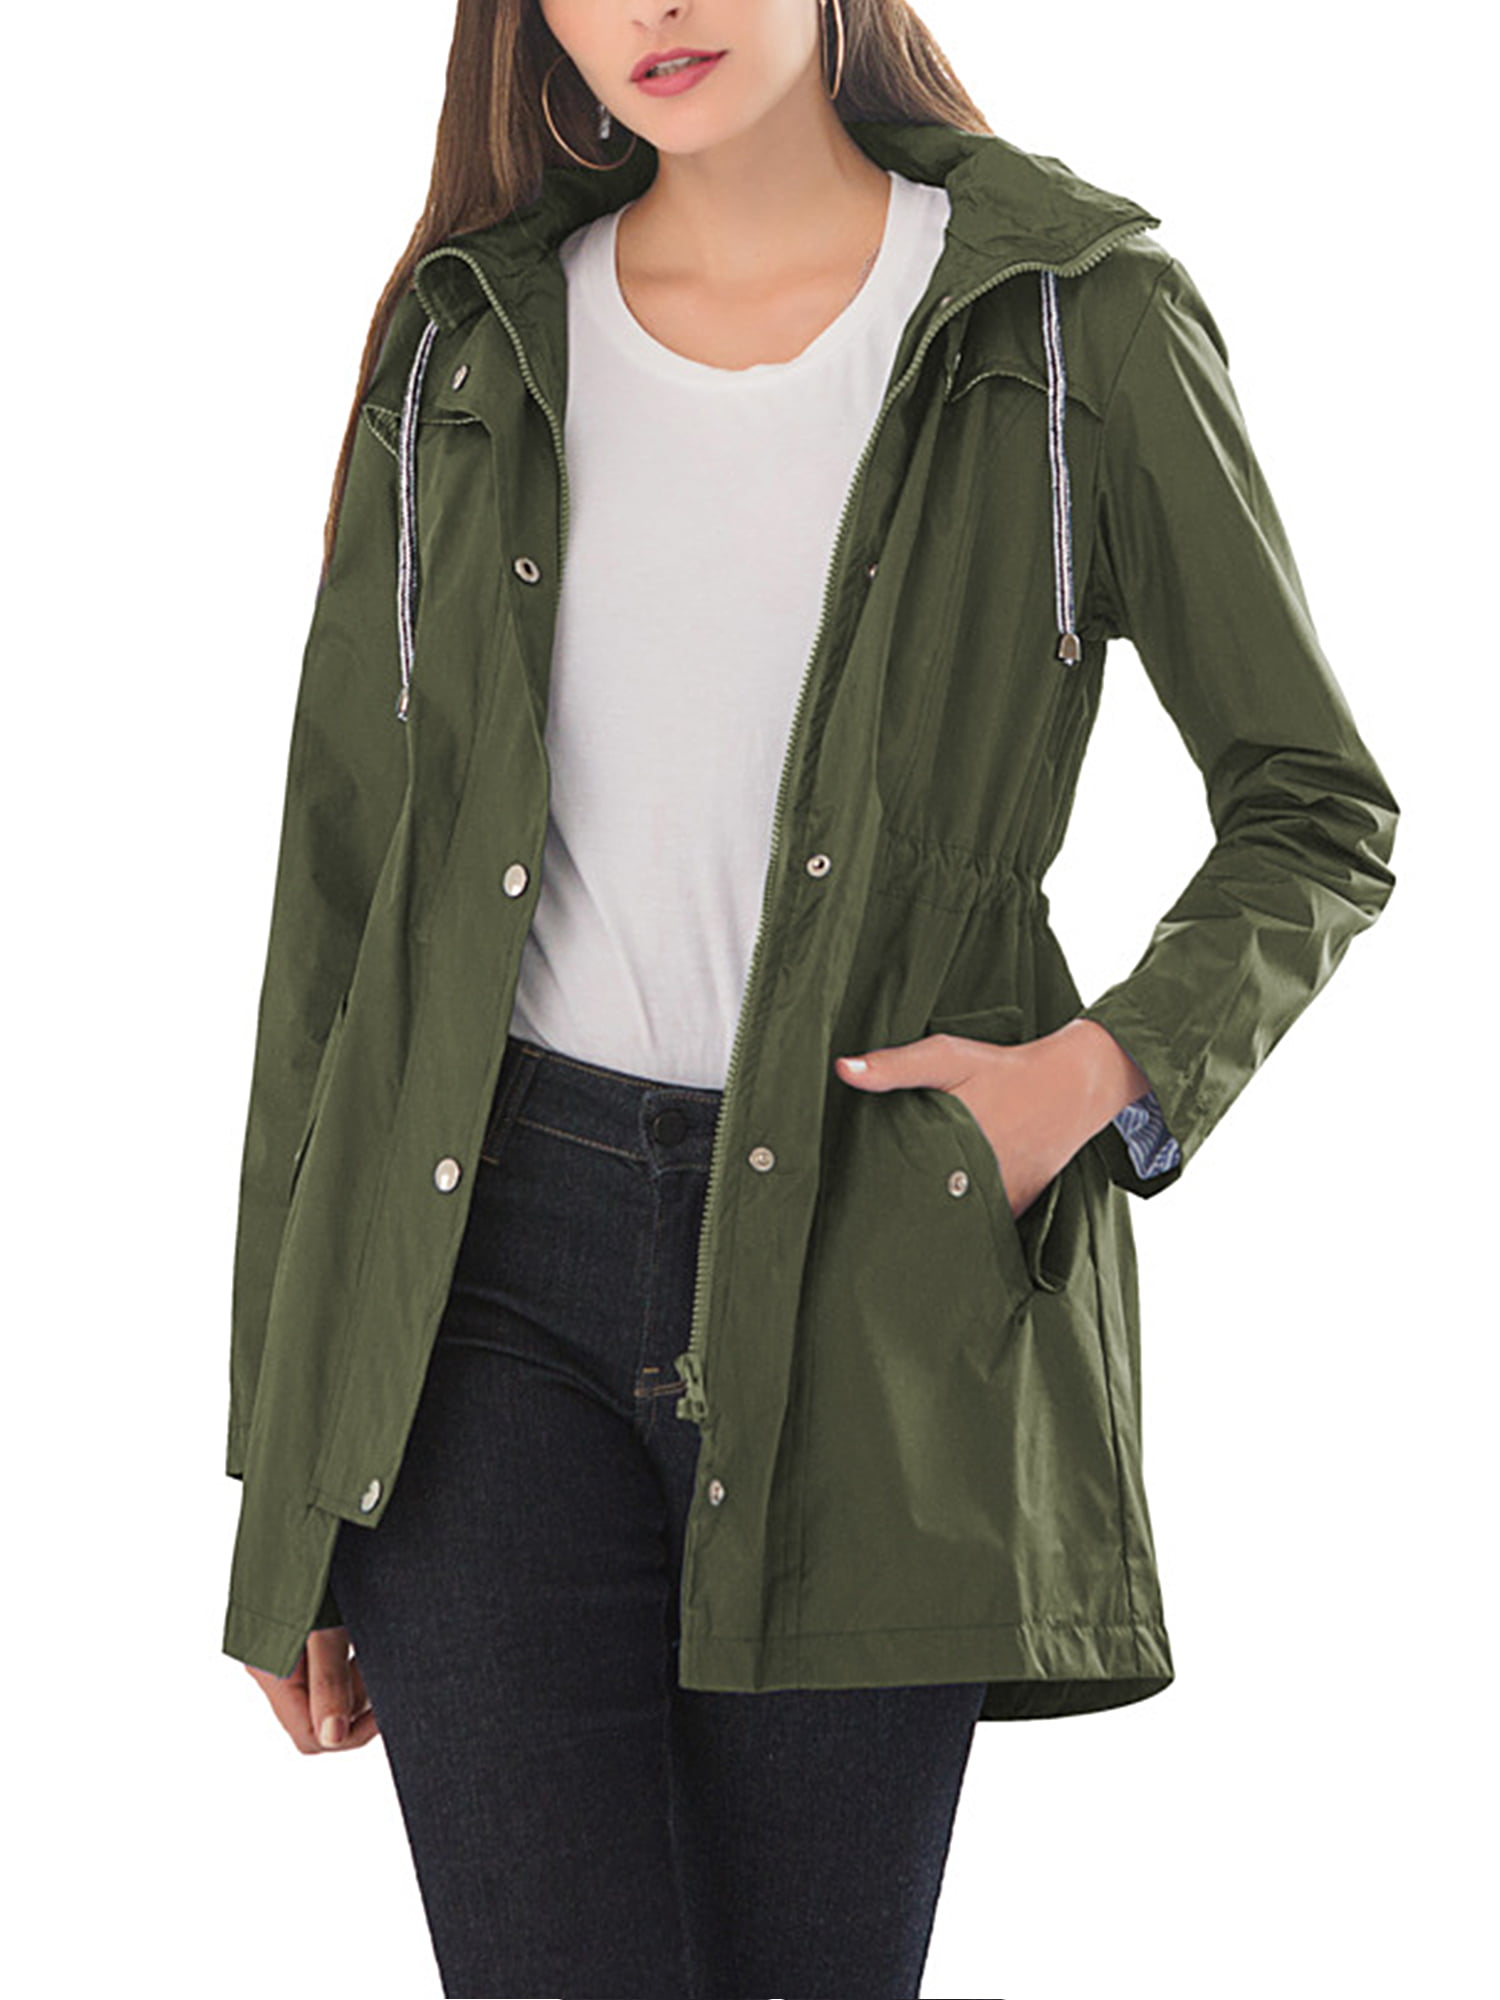 Rainproof Coat Women’s Solid Outdoor Windproof Sun Protection Sportswear Rain Jackets with Hood Flap Pockets Long Sleeve Plus Size Windbreaker Sweatshirts 